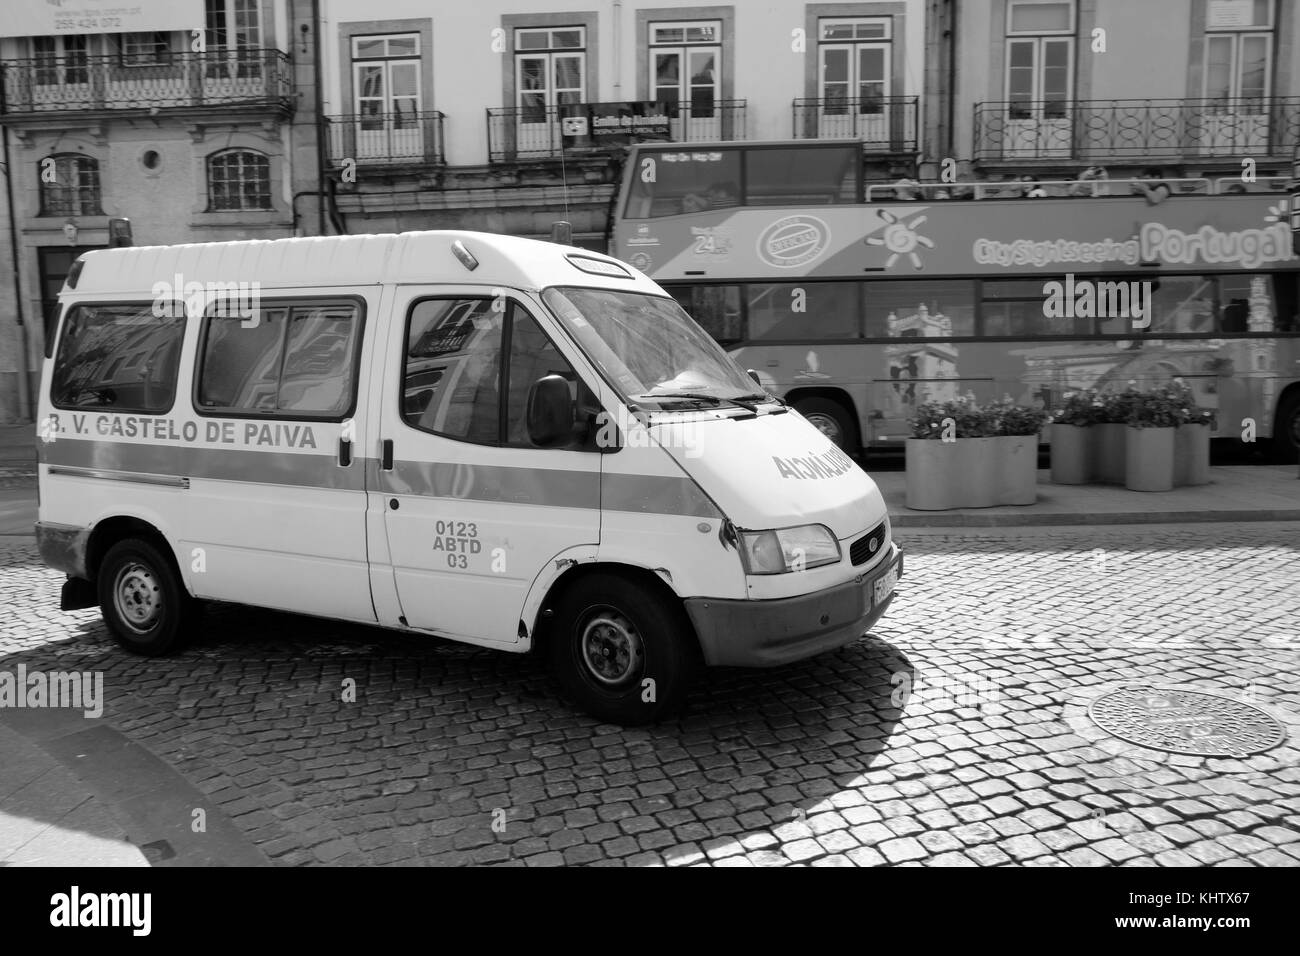 September 2017 - Portuguese police car in the city of Porto Stock Photo